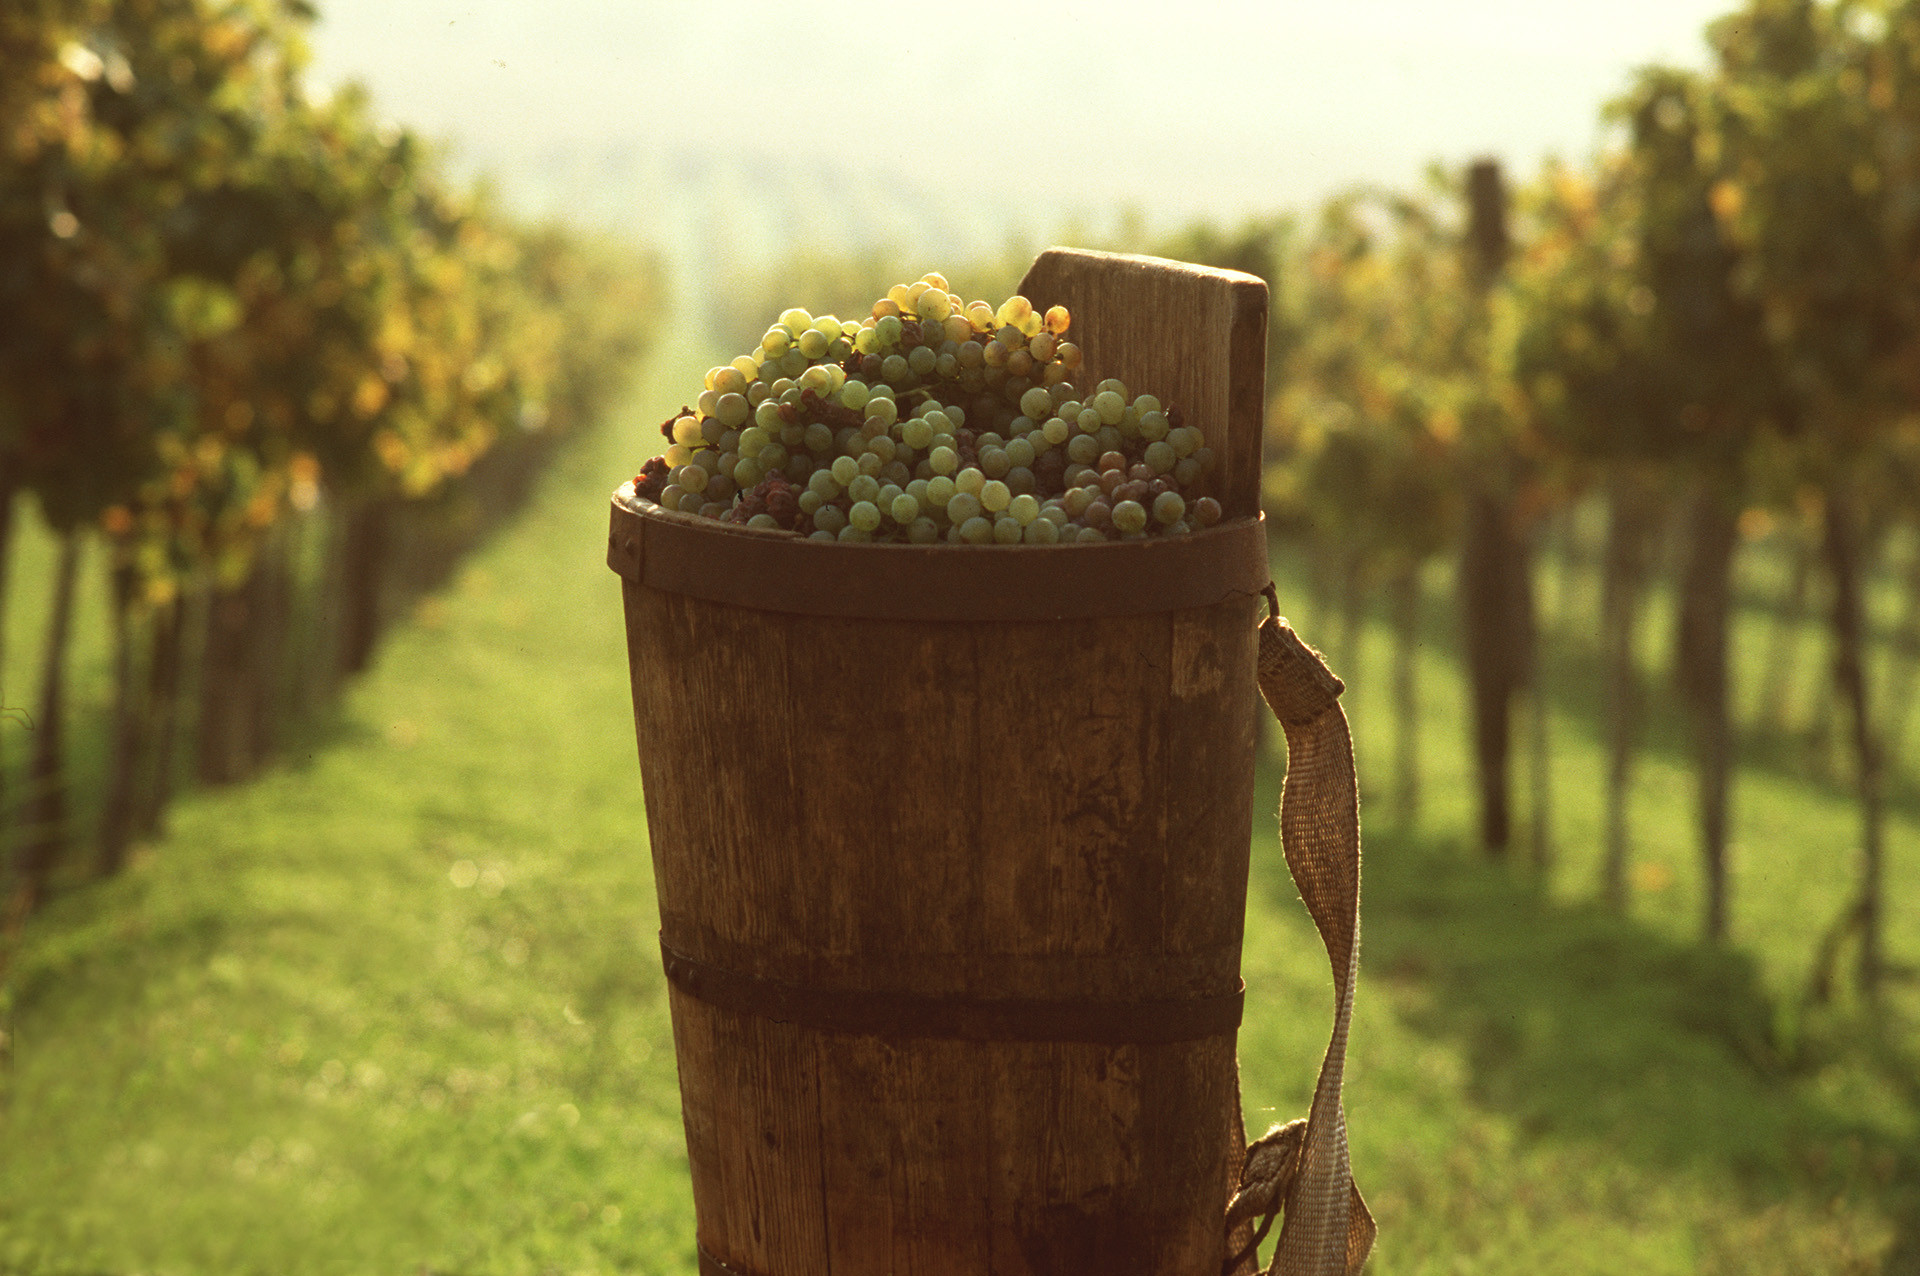 Historicky známy Tokajský región sa venuje produkcii vína a pestovaniu hrozna v úrodných viniciach. Titul "kráľ vín a víno kráľov" si nesie už 450 rokov. 
Lásku k tomuto maďarskému pokladu si zamilovali aj korunované hlavy štátov, ako ruskí cári, poľskí králi či sám rímsky pápež.
Nenechajte si preto pri návšteve Maďarska ujsť prehliadku Tokajského Múzea a slávnej histórie, naprieč dejinami, keď bolo tokajské víno využívané aj ako liek. Odmenou vám bude aj neuveriteľný výhľad, ktorý sa vám naskytne z vrcholkov viníc. 